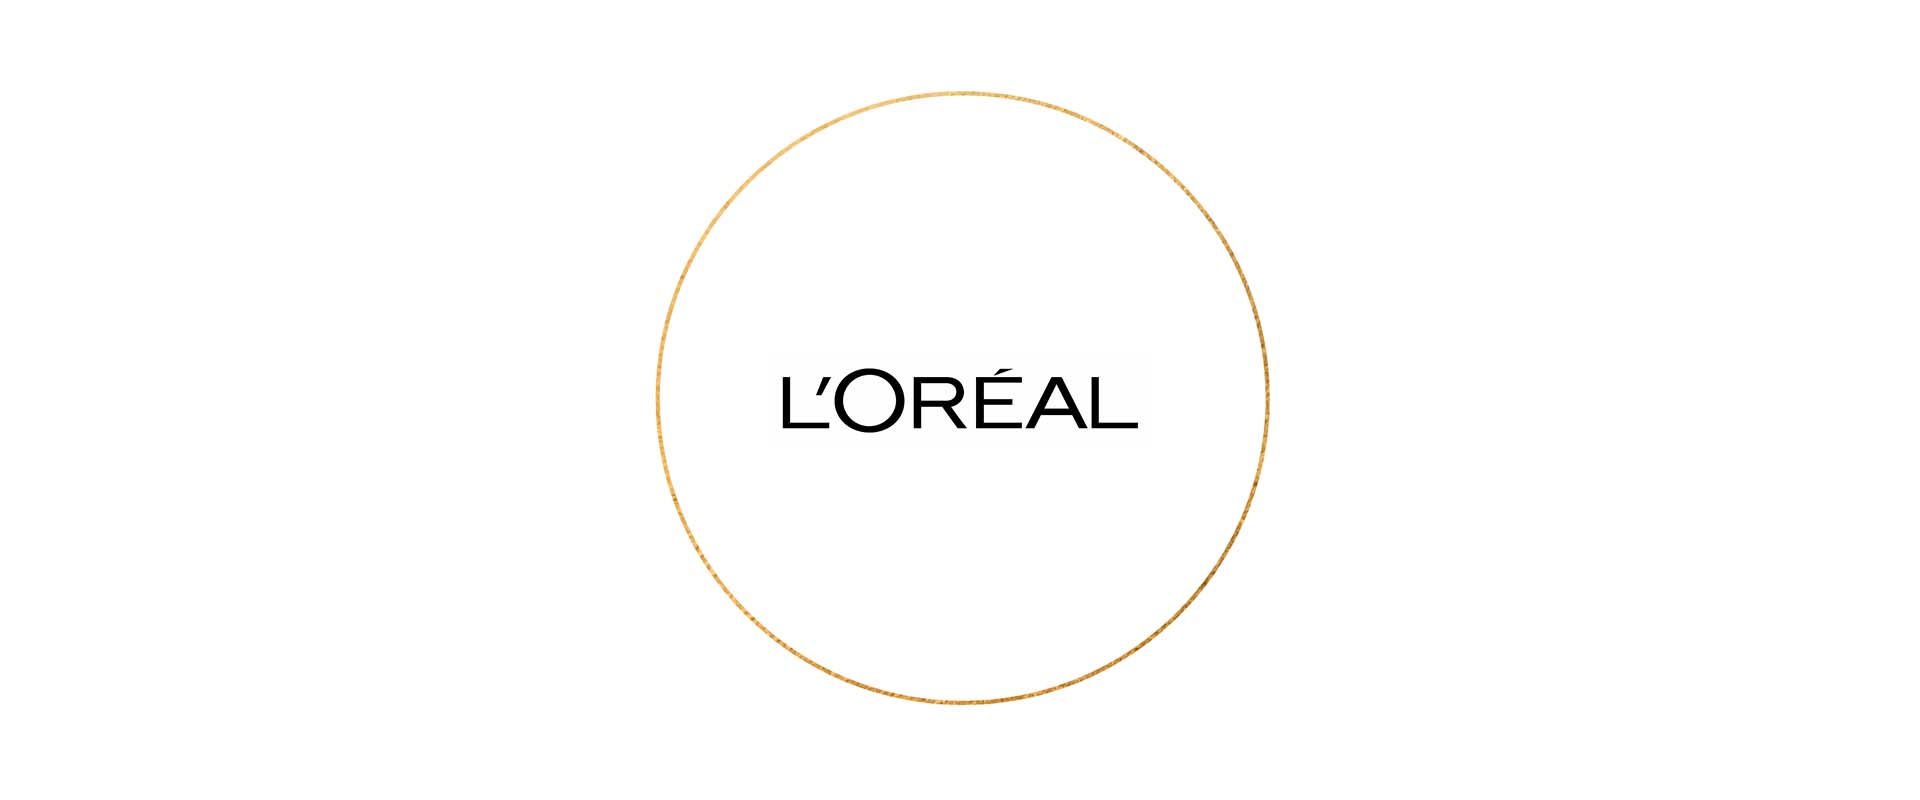 La Roche-Posay - L'Oréal Group